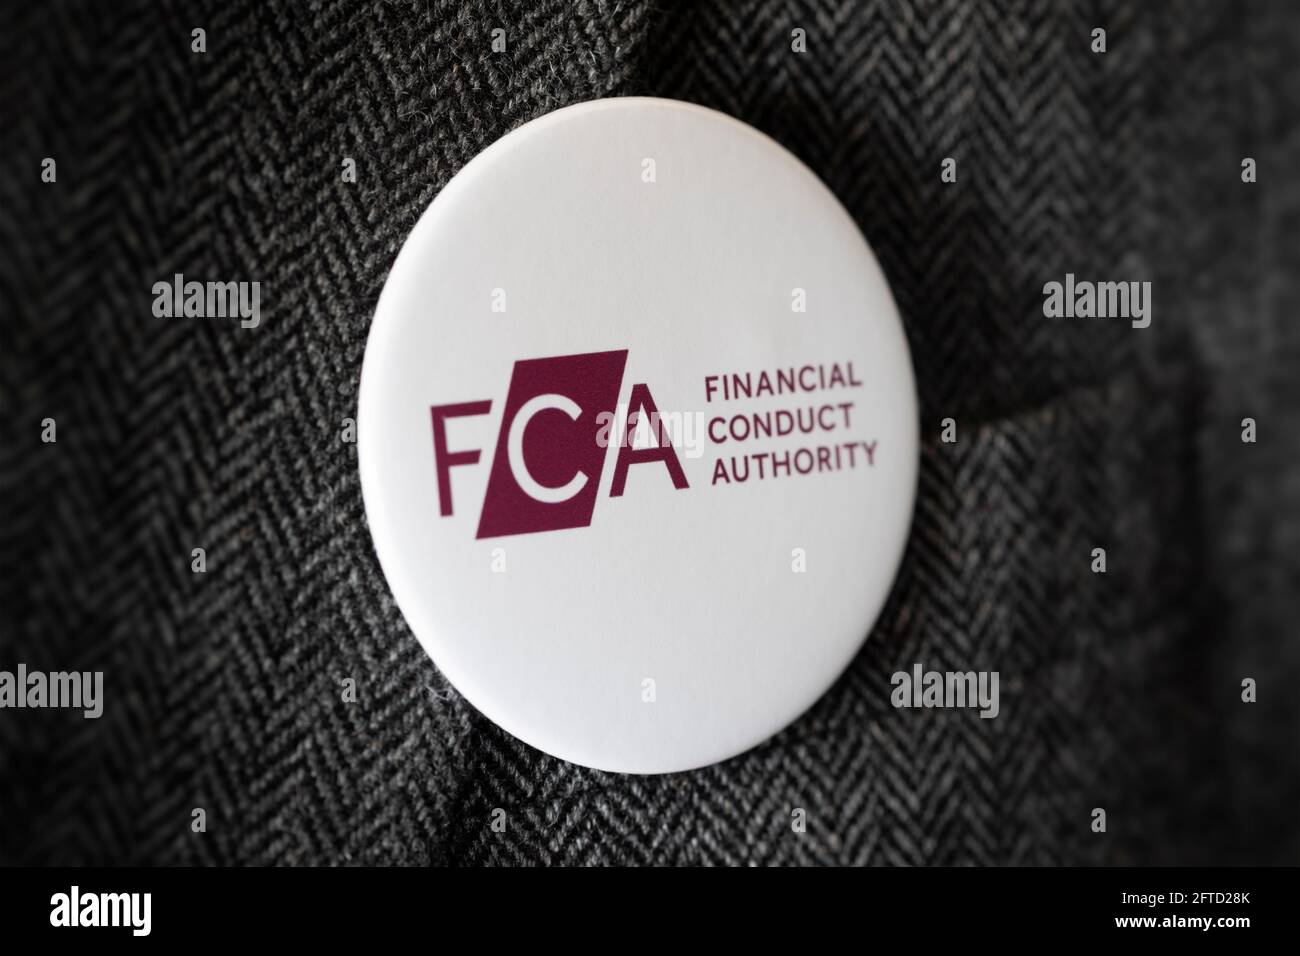 Ein Knopfabzeichen mit dem Logo der FCA Financial Conduct Authority, das an einer Jacke befestigt ist. Stockfoto